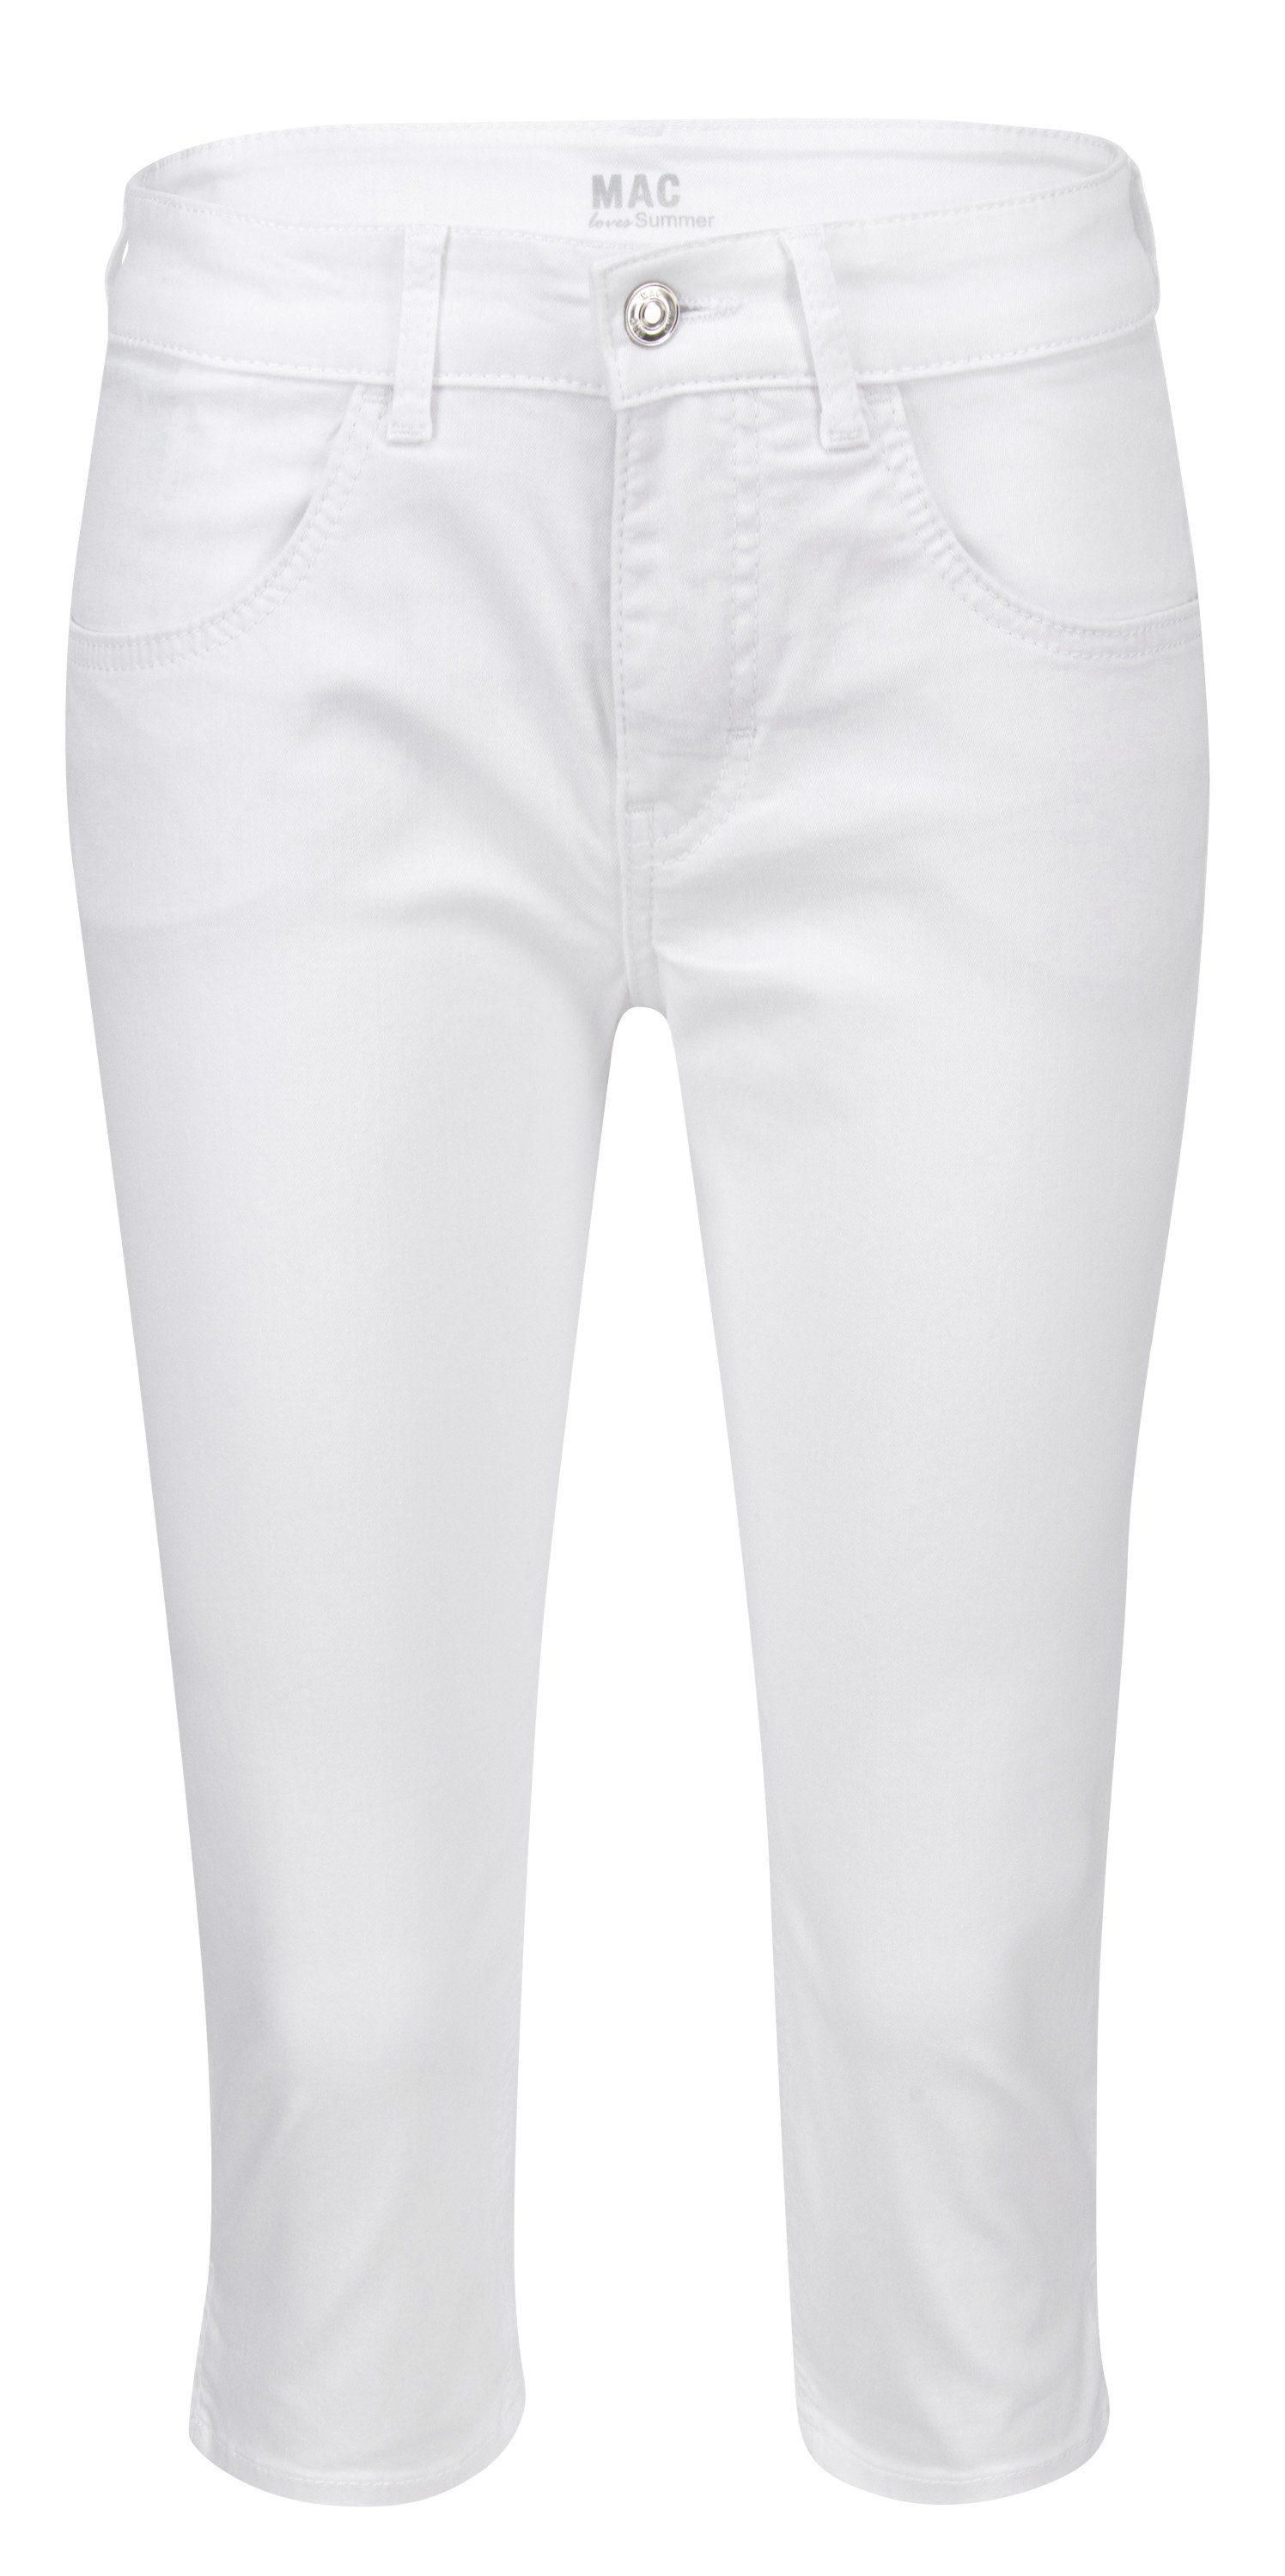 CAPRI Stretch-Jeans MAC denim 5917-90-0394 MAC D010 white